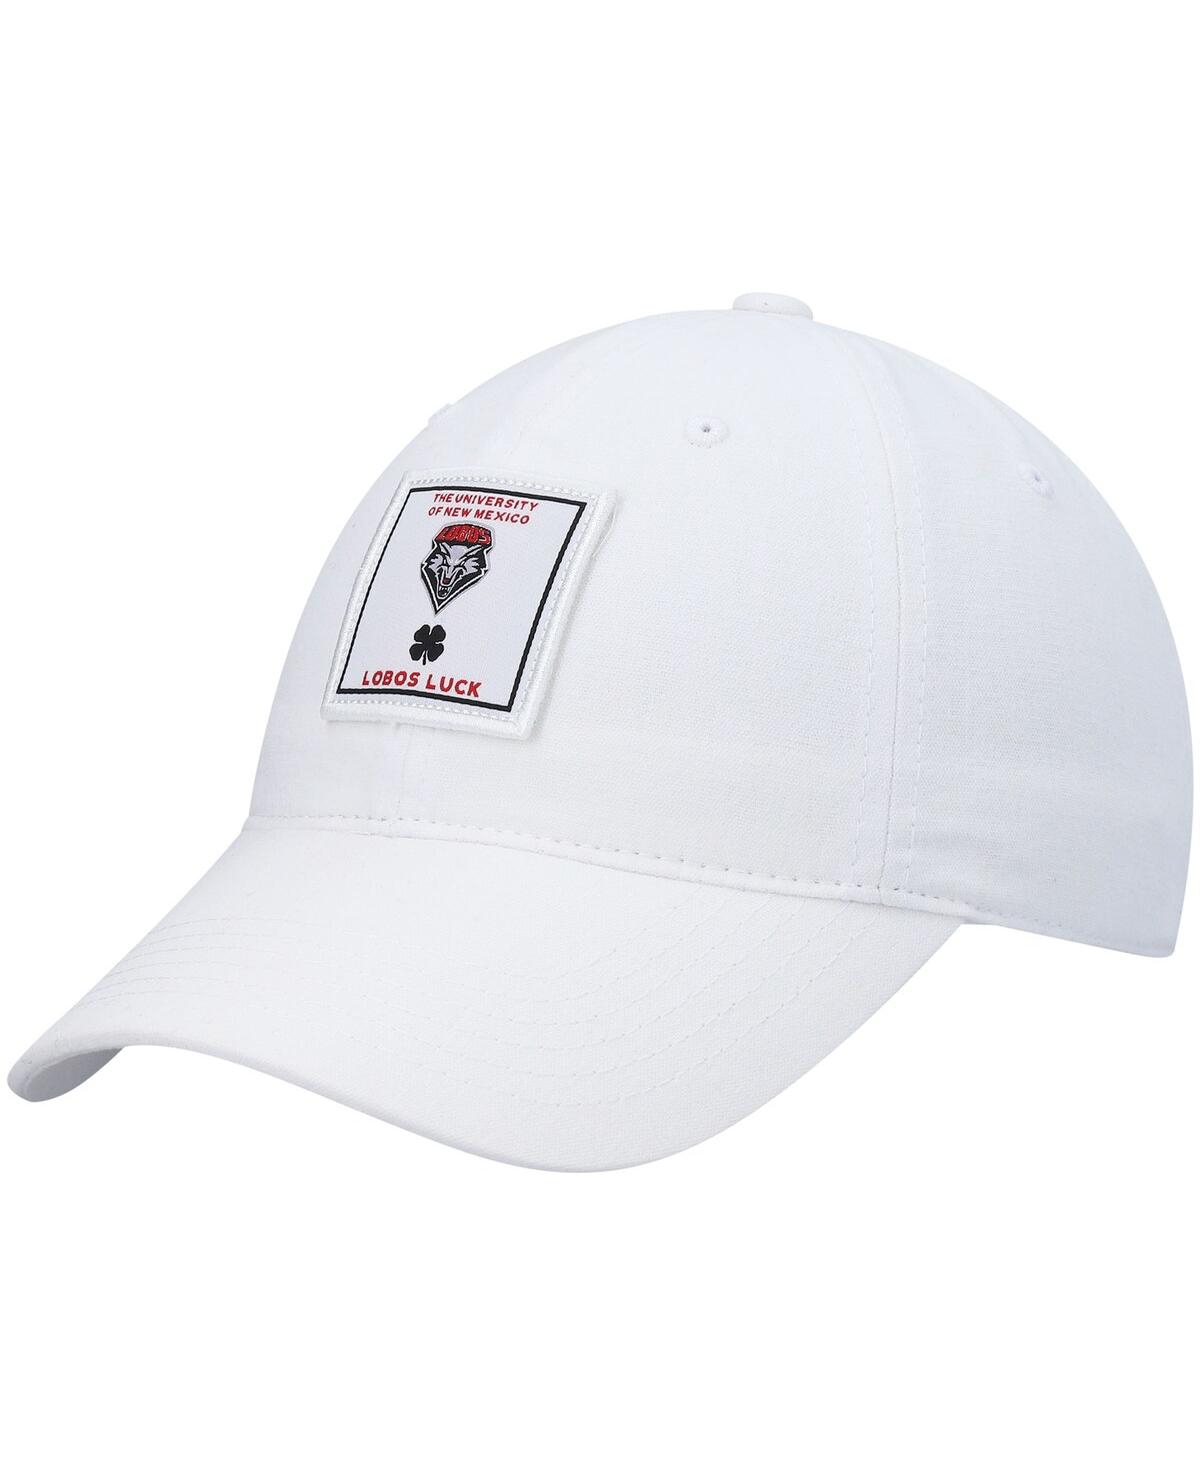 Shop Black Clover Men's White New Mexico Lobos Dream Adjustable Hat